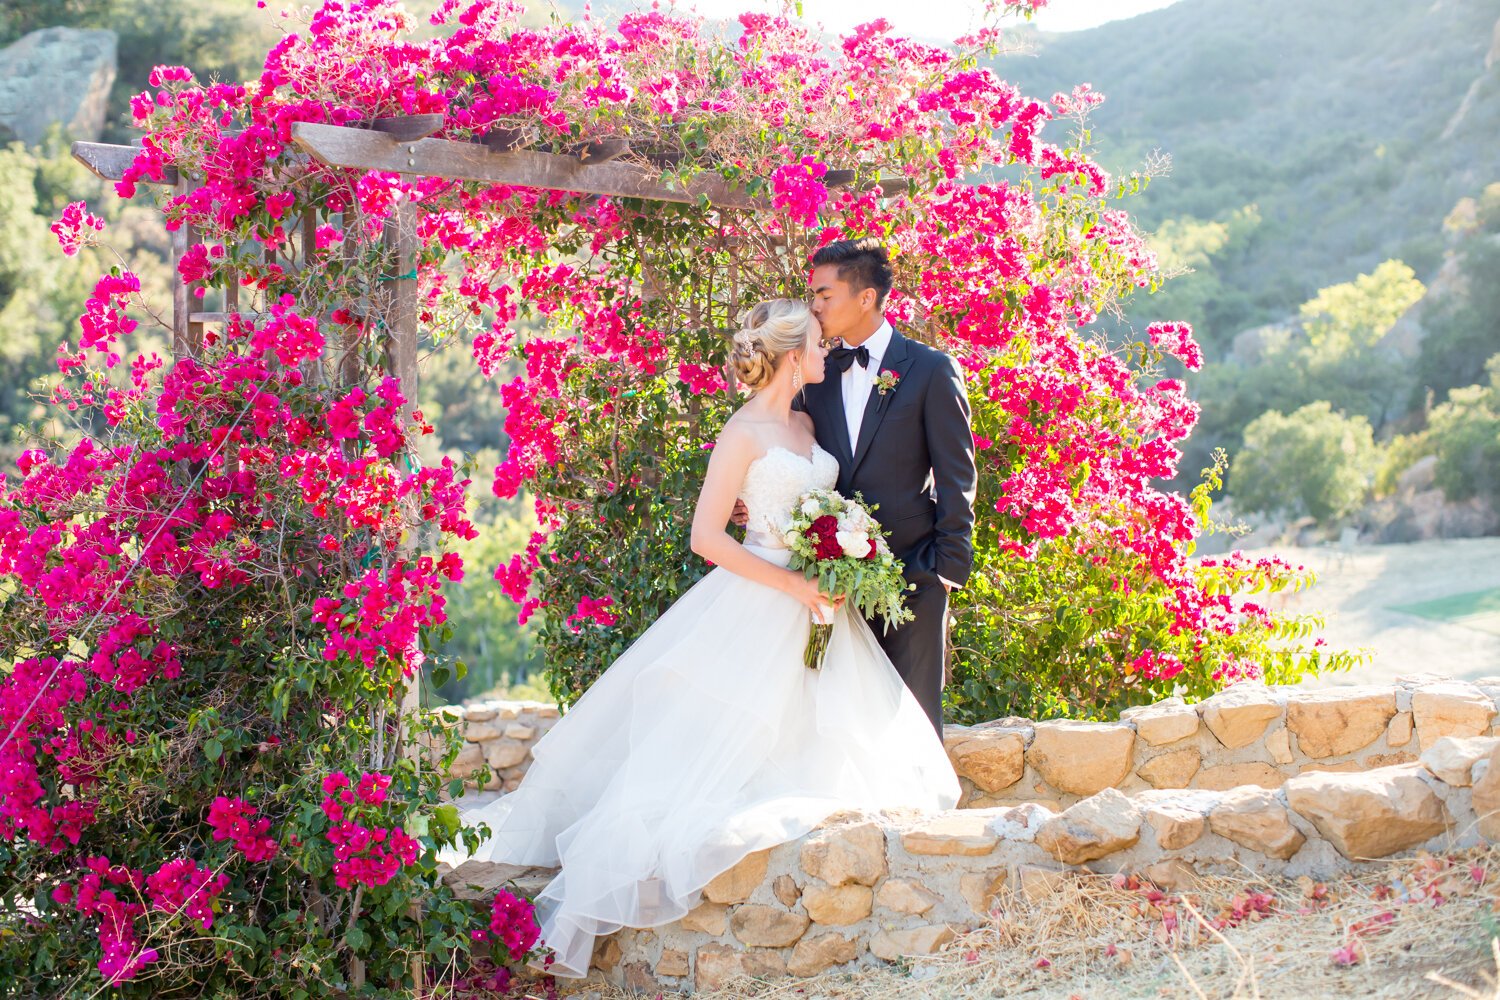 www.santabarbarawedding.com | APEX Malibu | Elizabeth Victoria Photography | Ebeling Events | Flowers by Maria | Malibu Clothes | BHLDN | Bride and Groom Under Flower Arch 